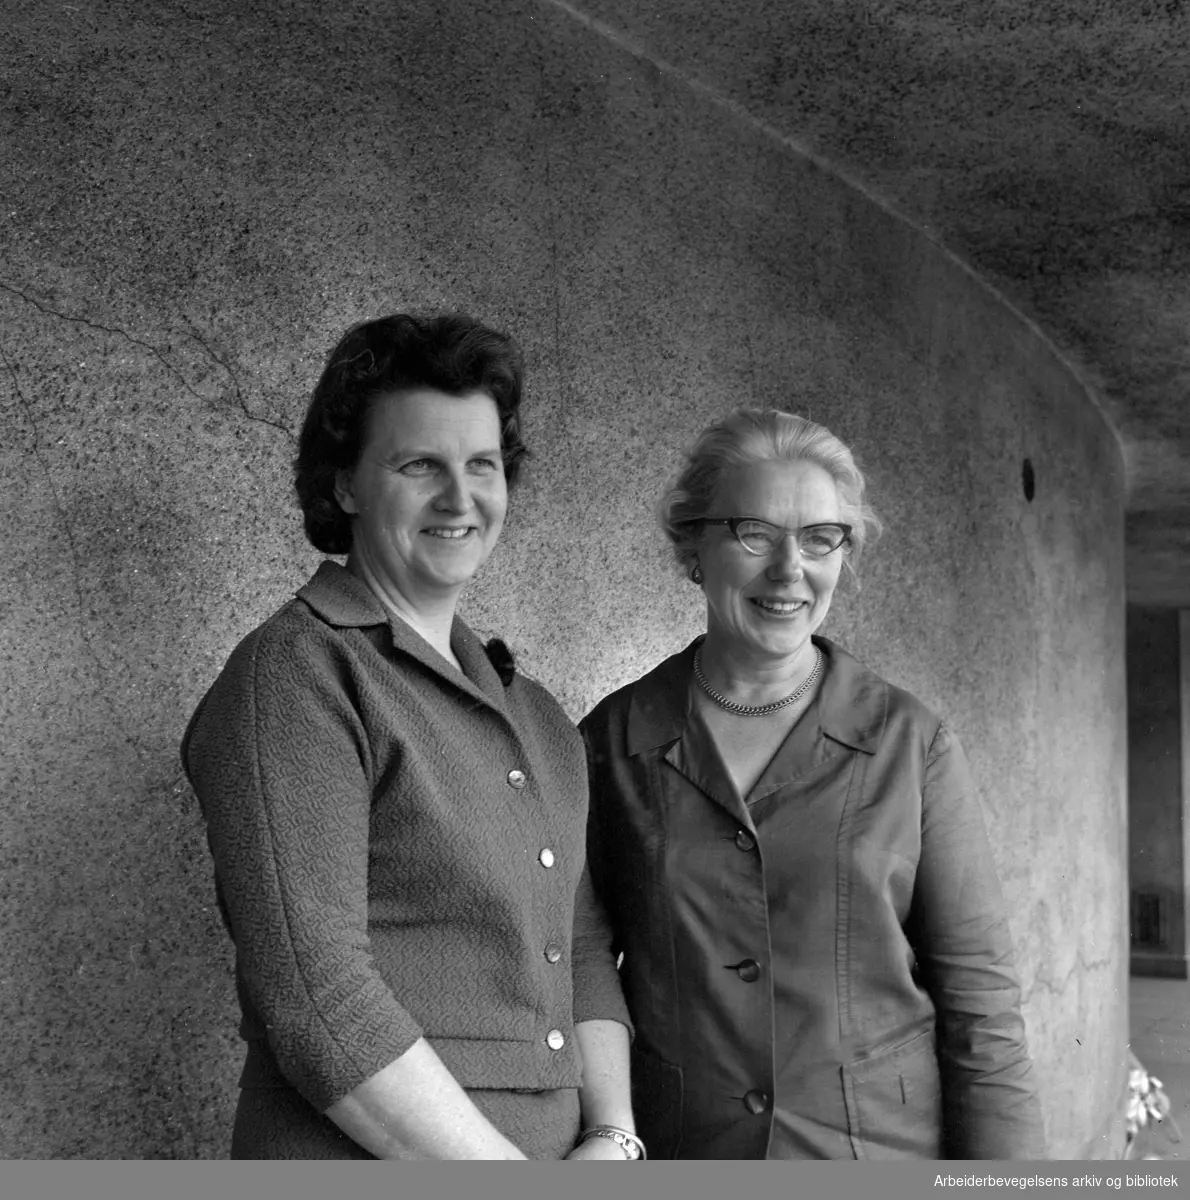 Sonja Ludvigsen (1928-1974) og Aase Bjerkholt (1915-2012) på Arbeiderpartiets landskvinnekonferanse, 9. mai 1967. Aase Bjerkholt var leder for Arbeiderpartiets kvinnesekretariat i 1963-1967 og Sonja Ludvigsen var leder i 1967-1974.